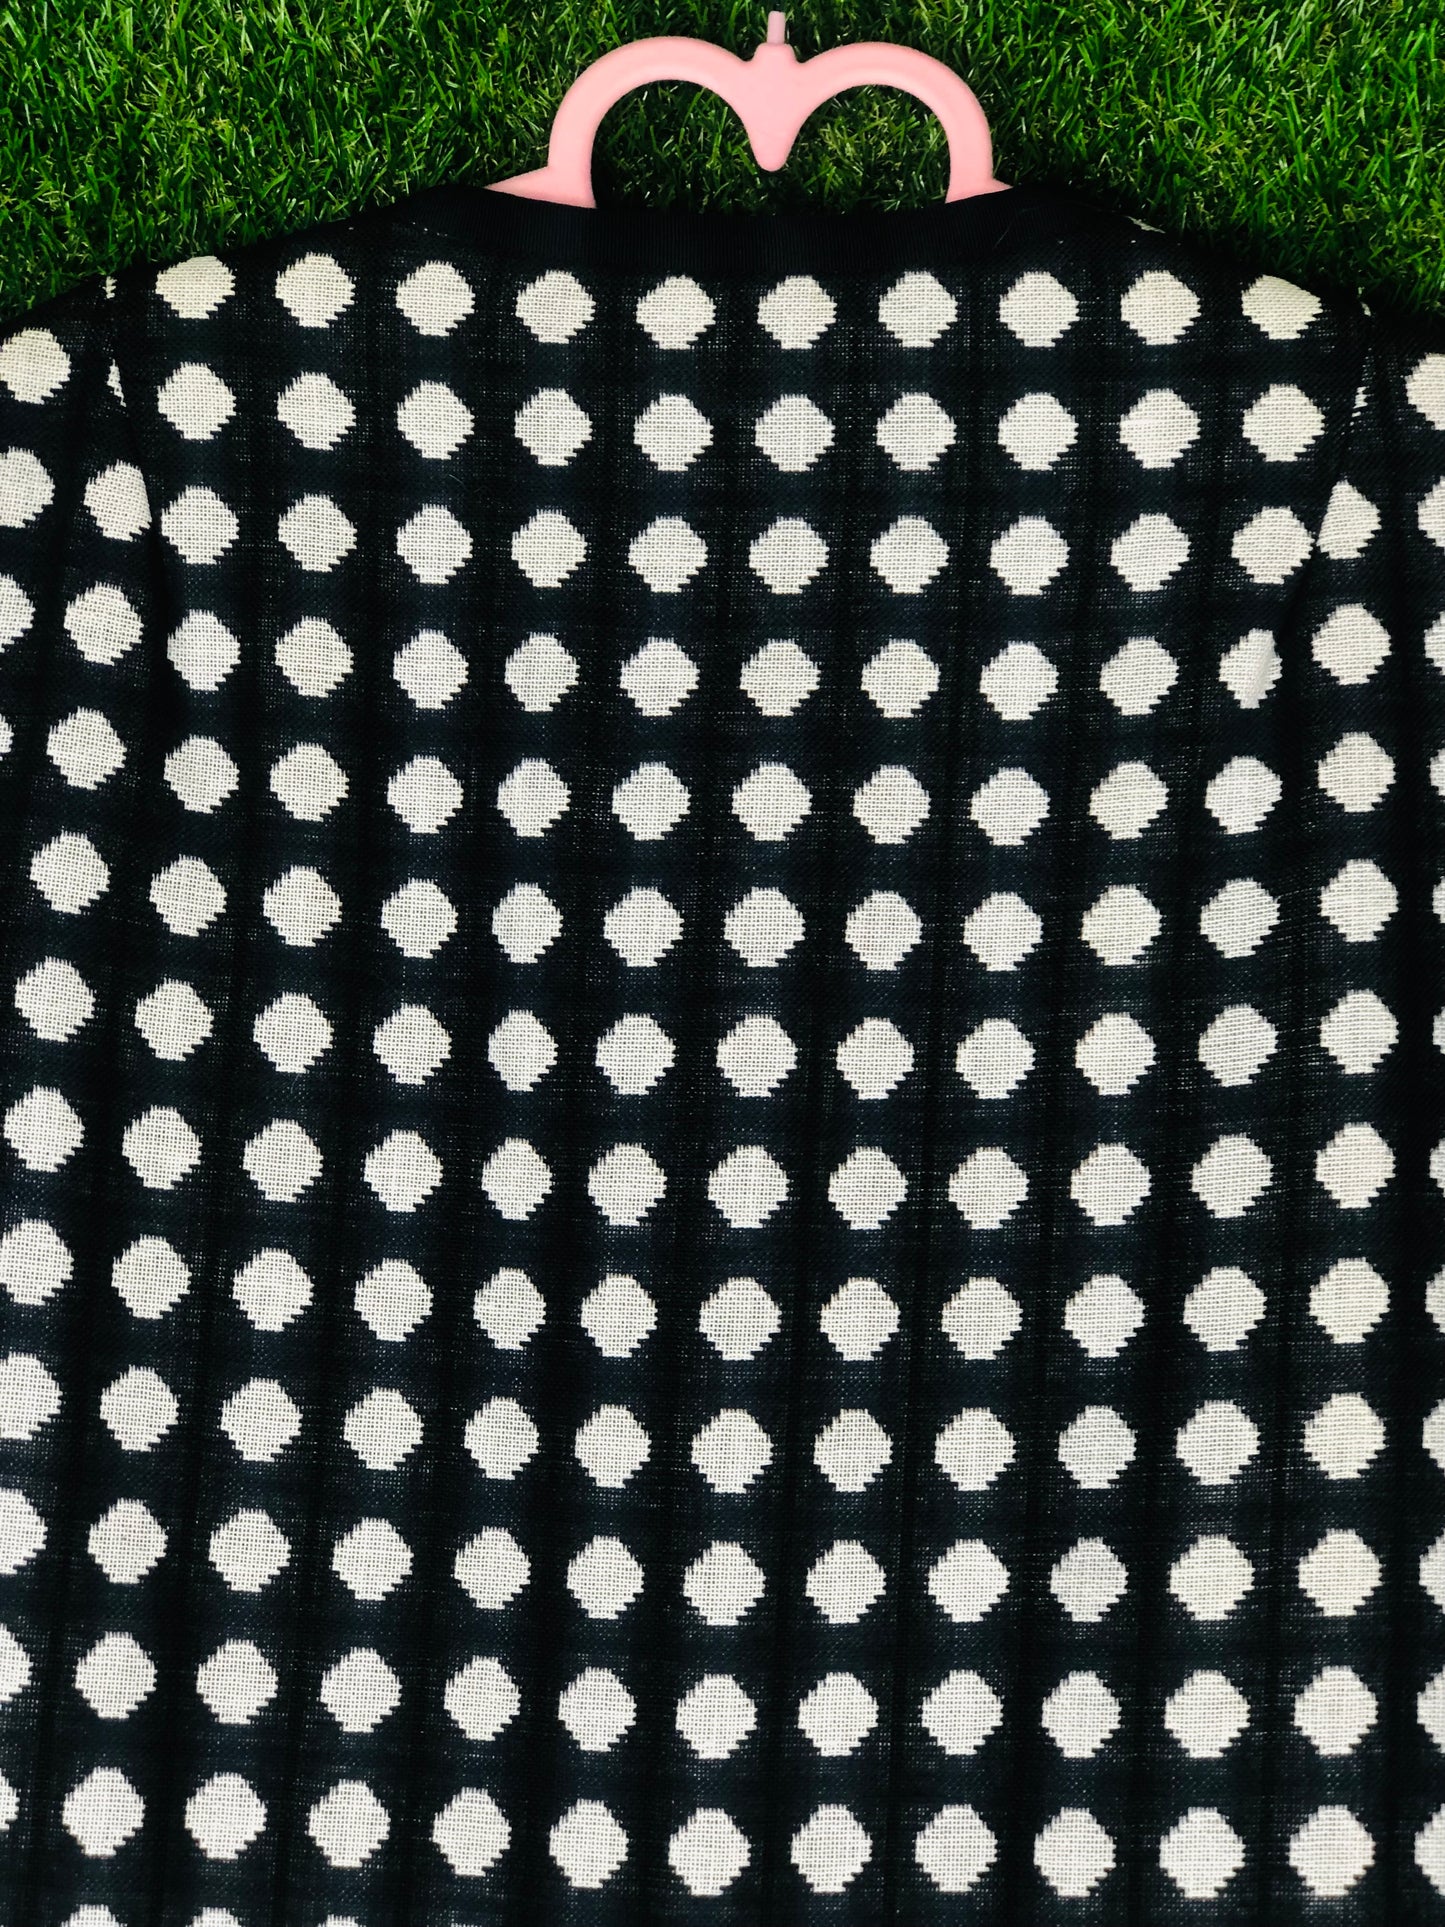 1960's Iconic 'Marlo Thomas Style' Black and White Polka Dot Coat